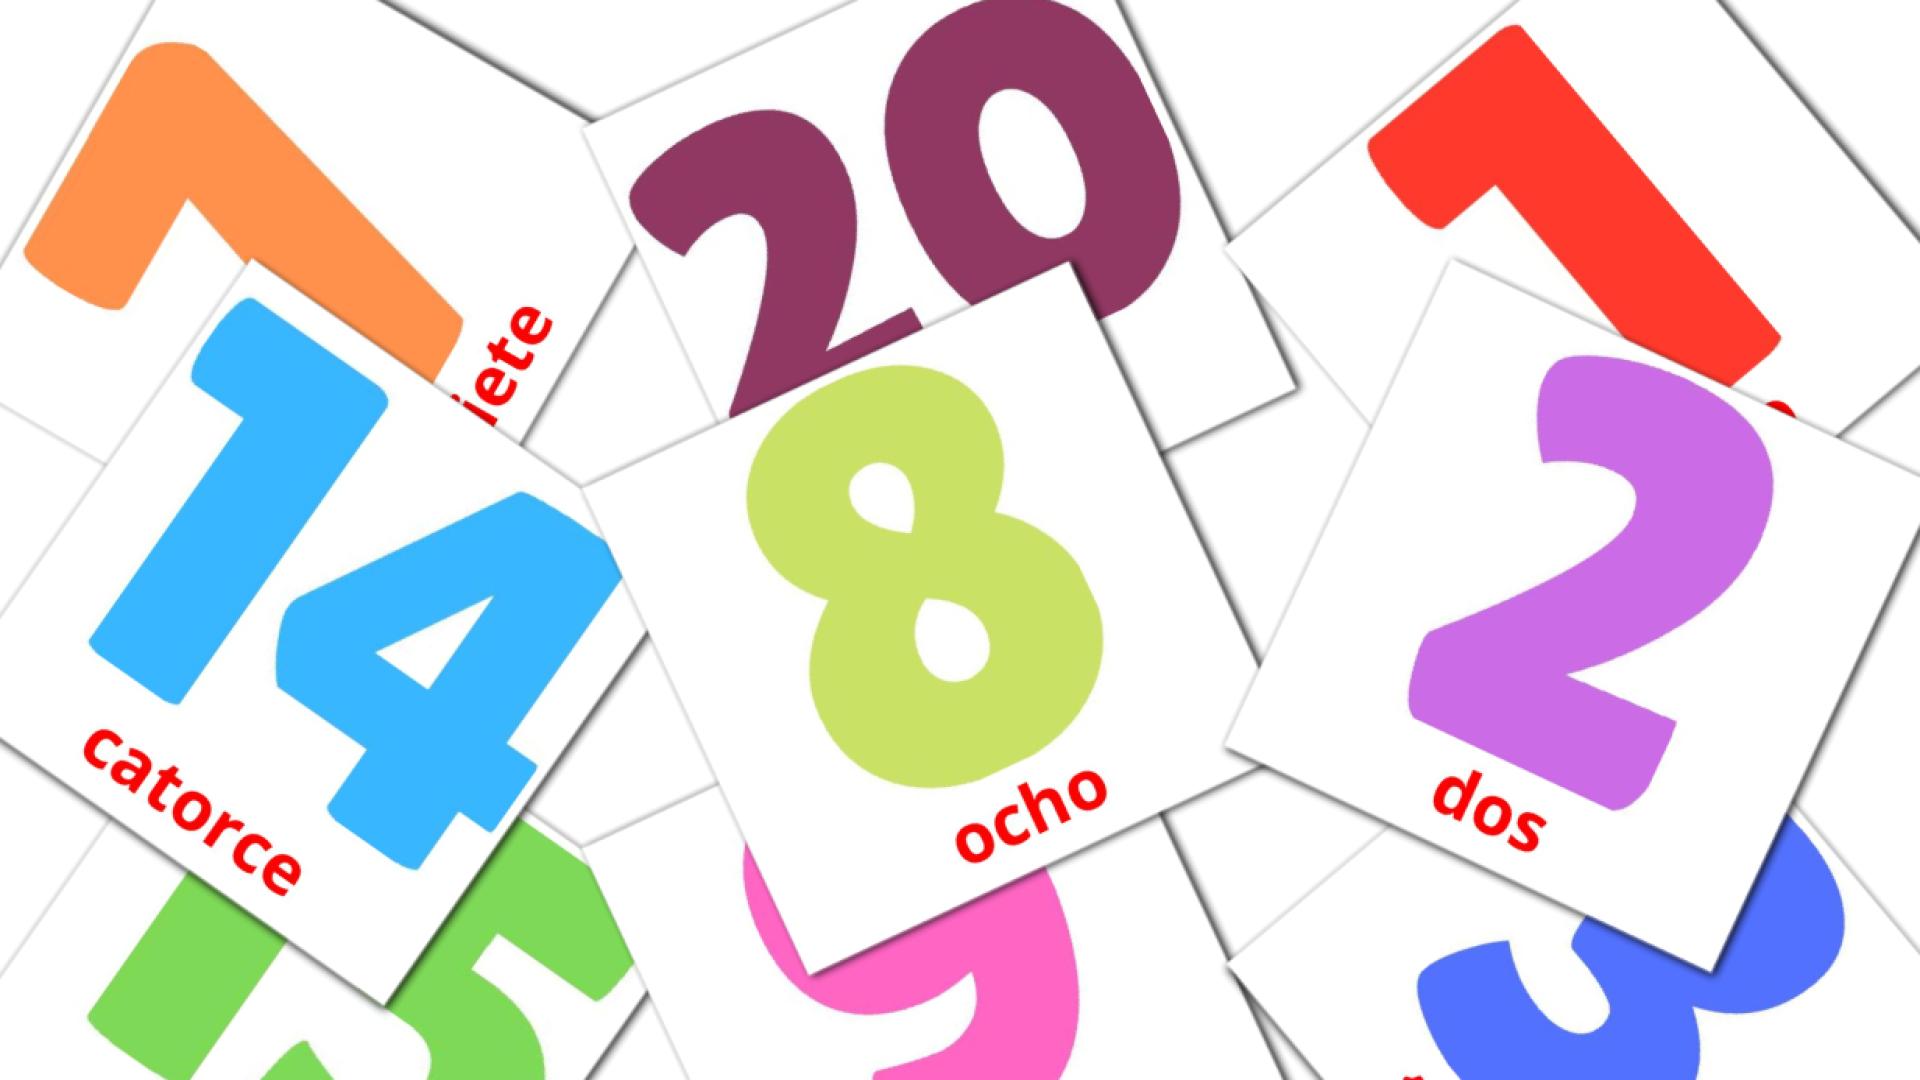 20 Flashcards de Números (1-20)